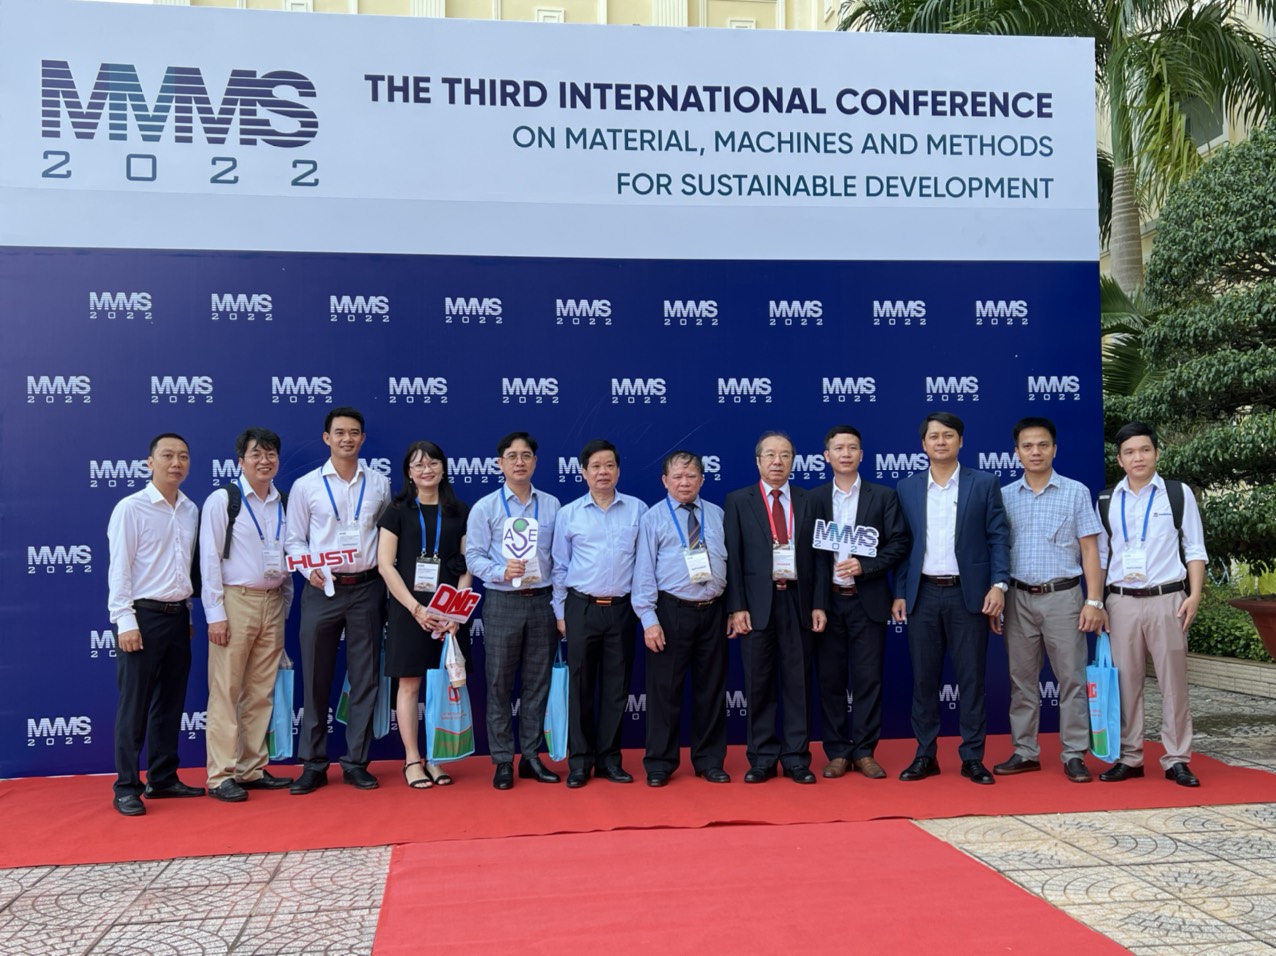 Hội nghị quốc tế về vật liệu, máy móc và phương pháp phát triển bền vững năm 2022. Third Inter national Conference on Material, Machines, and Methods for Sustainable Development – MMMS 2022)